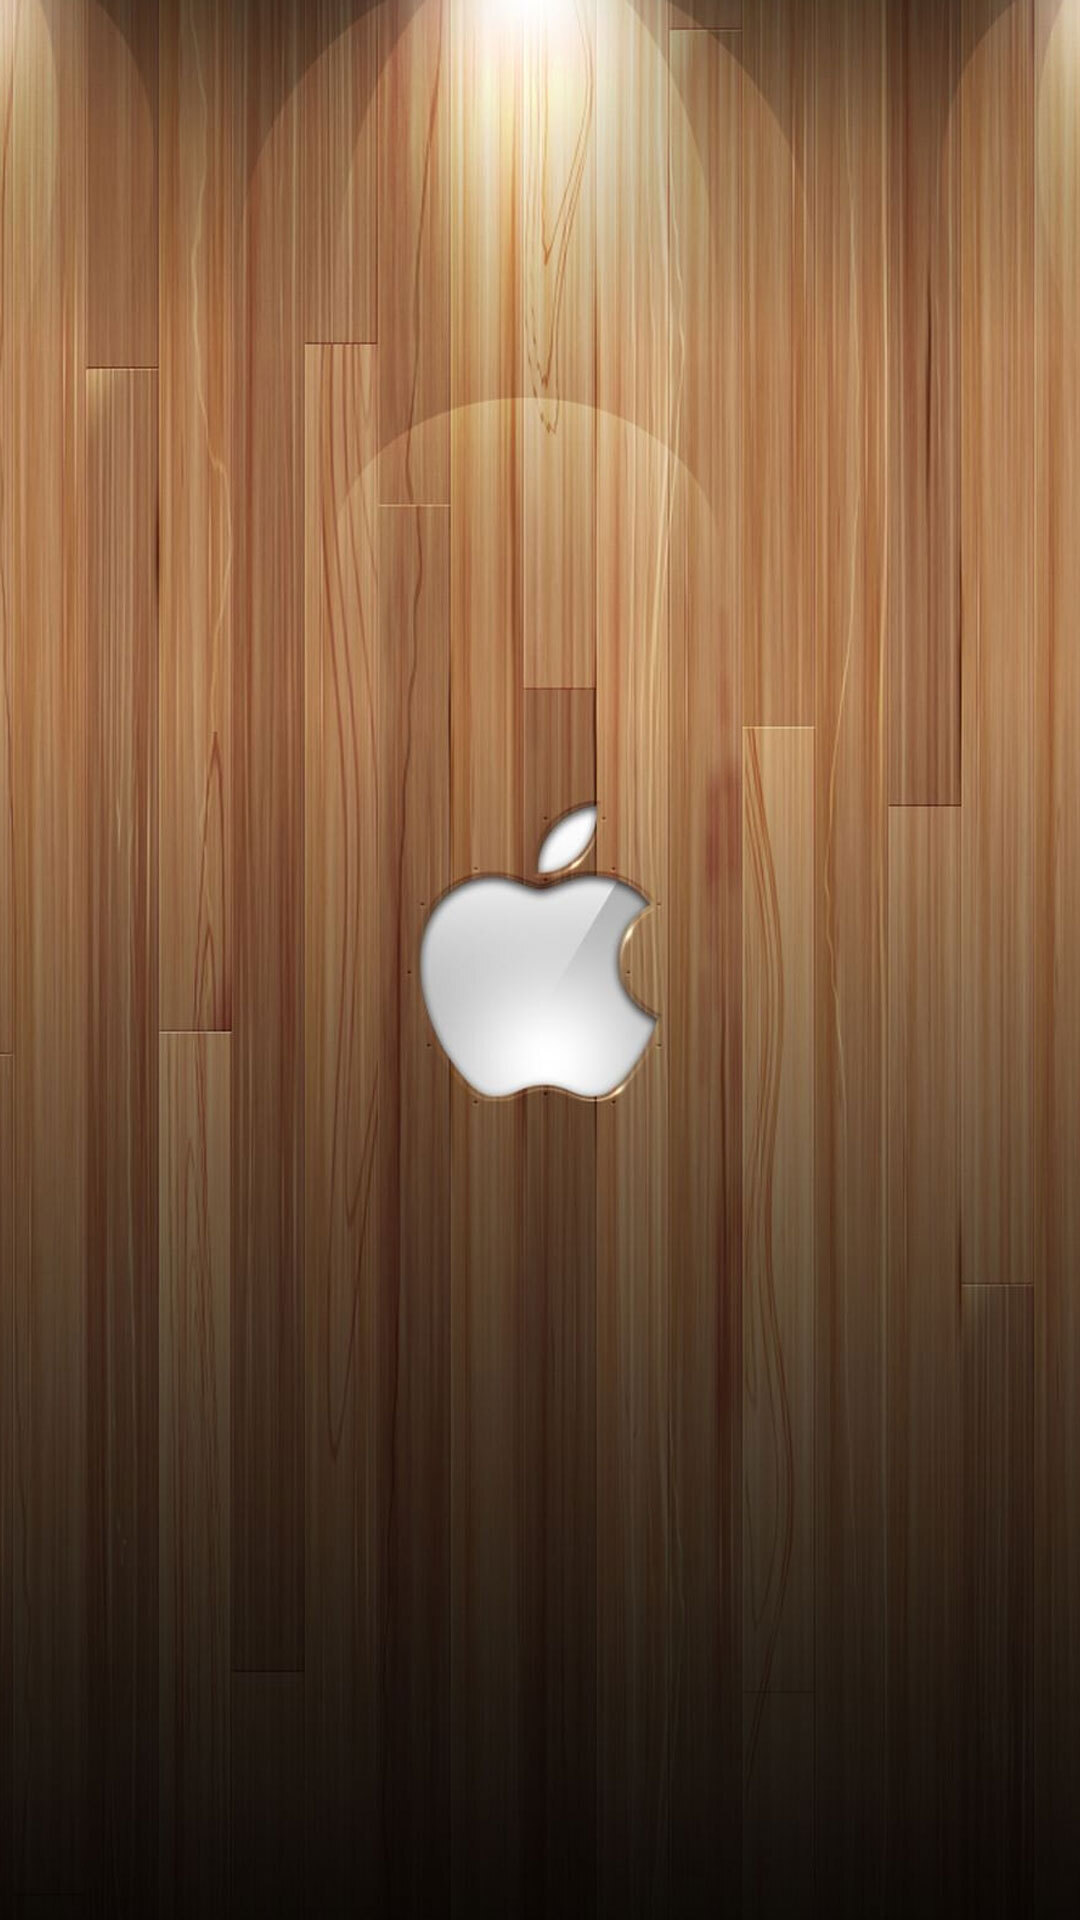 Hình nền iPhone 12 Pro Pro Max mini siêu đẹp bạn không bỏ lỡ nhé